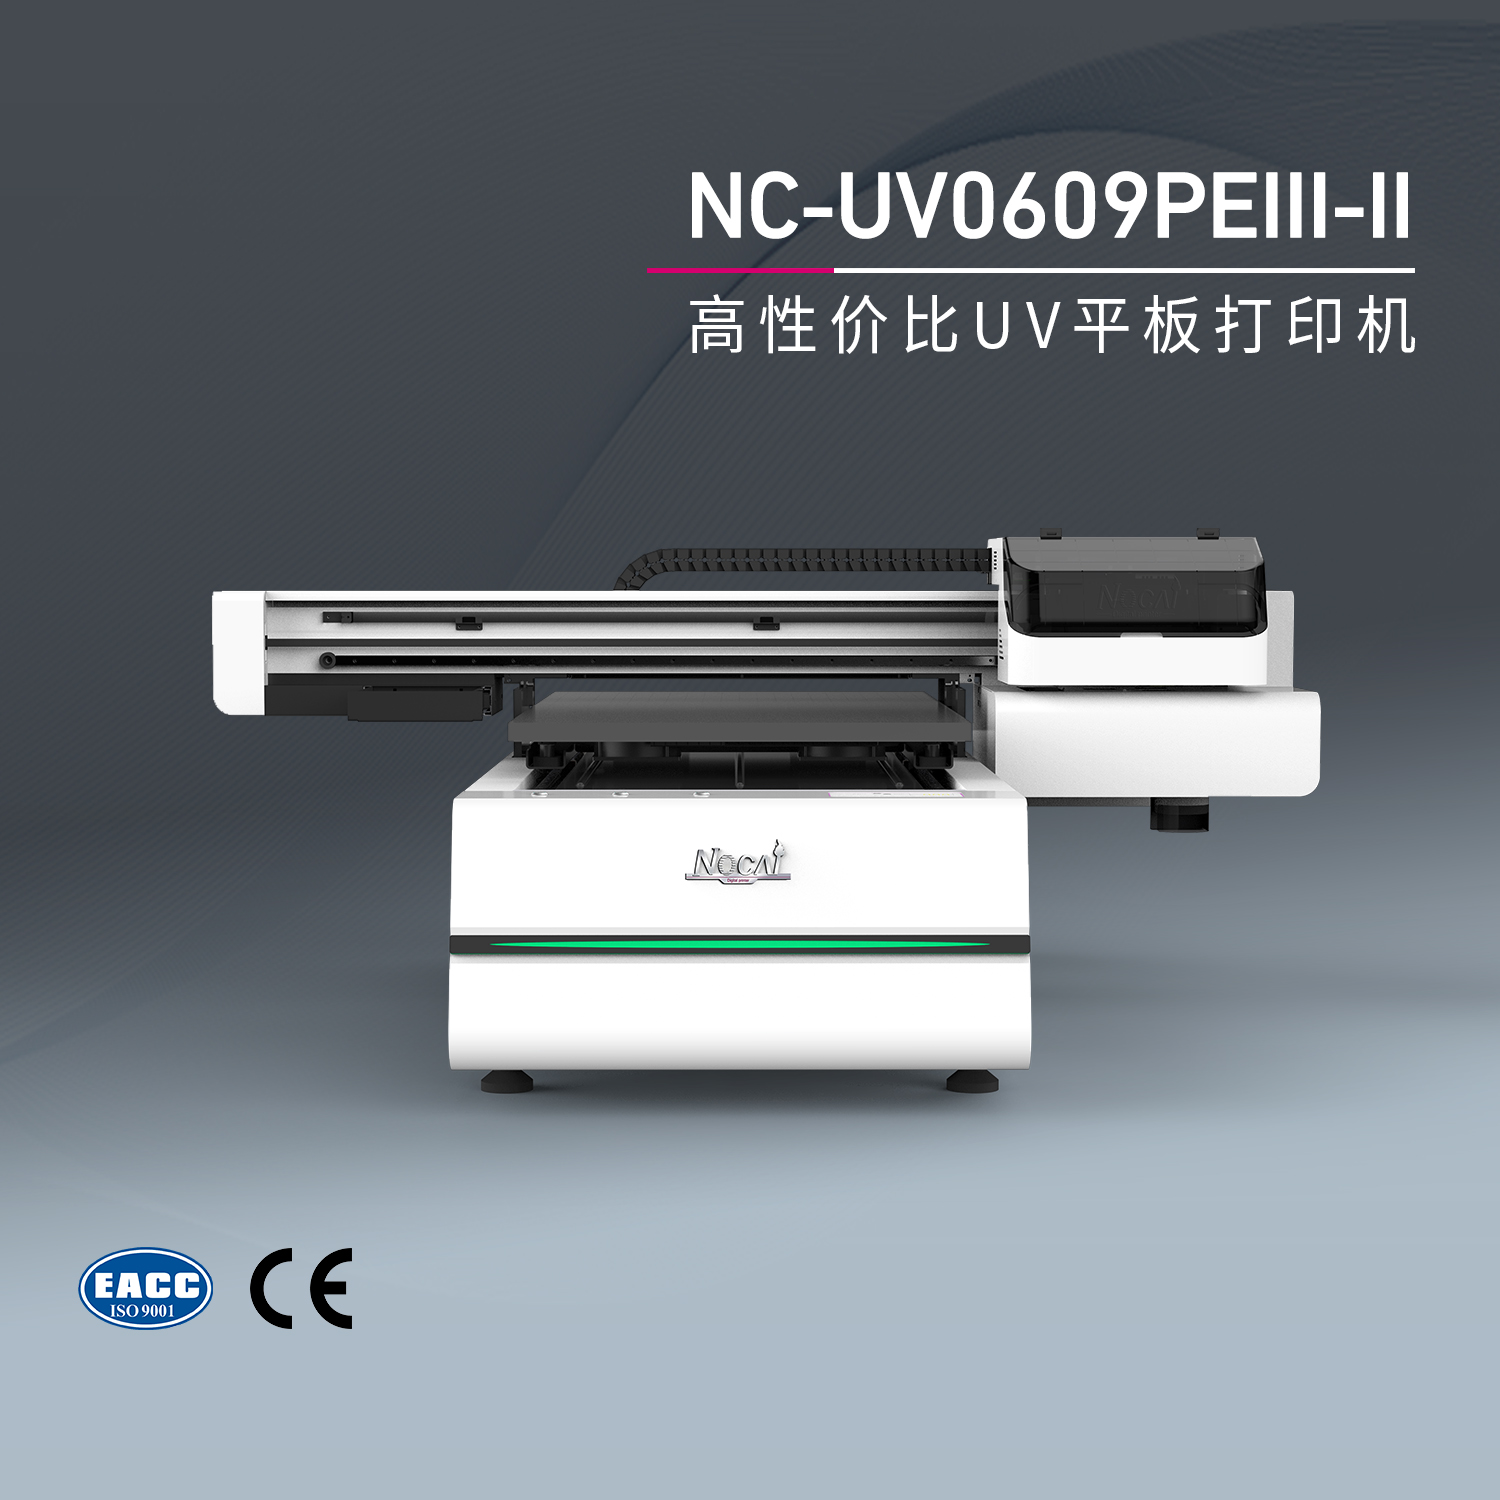 企业该如何选择合适的UV打印机